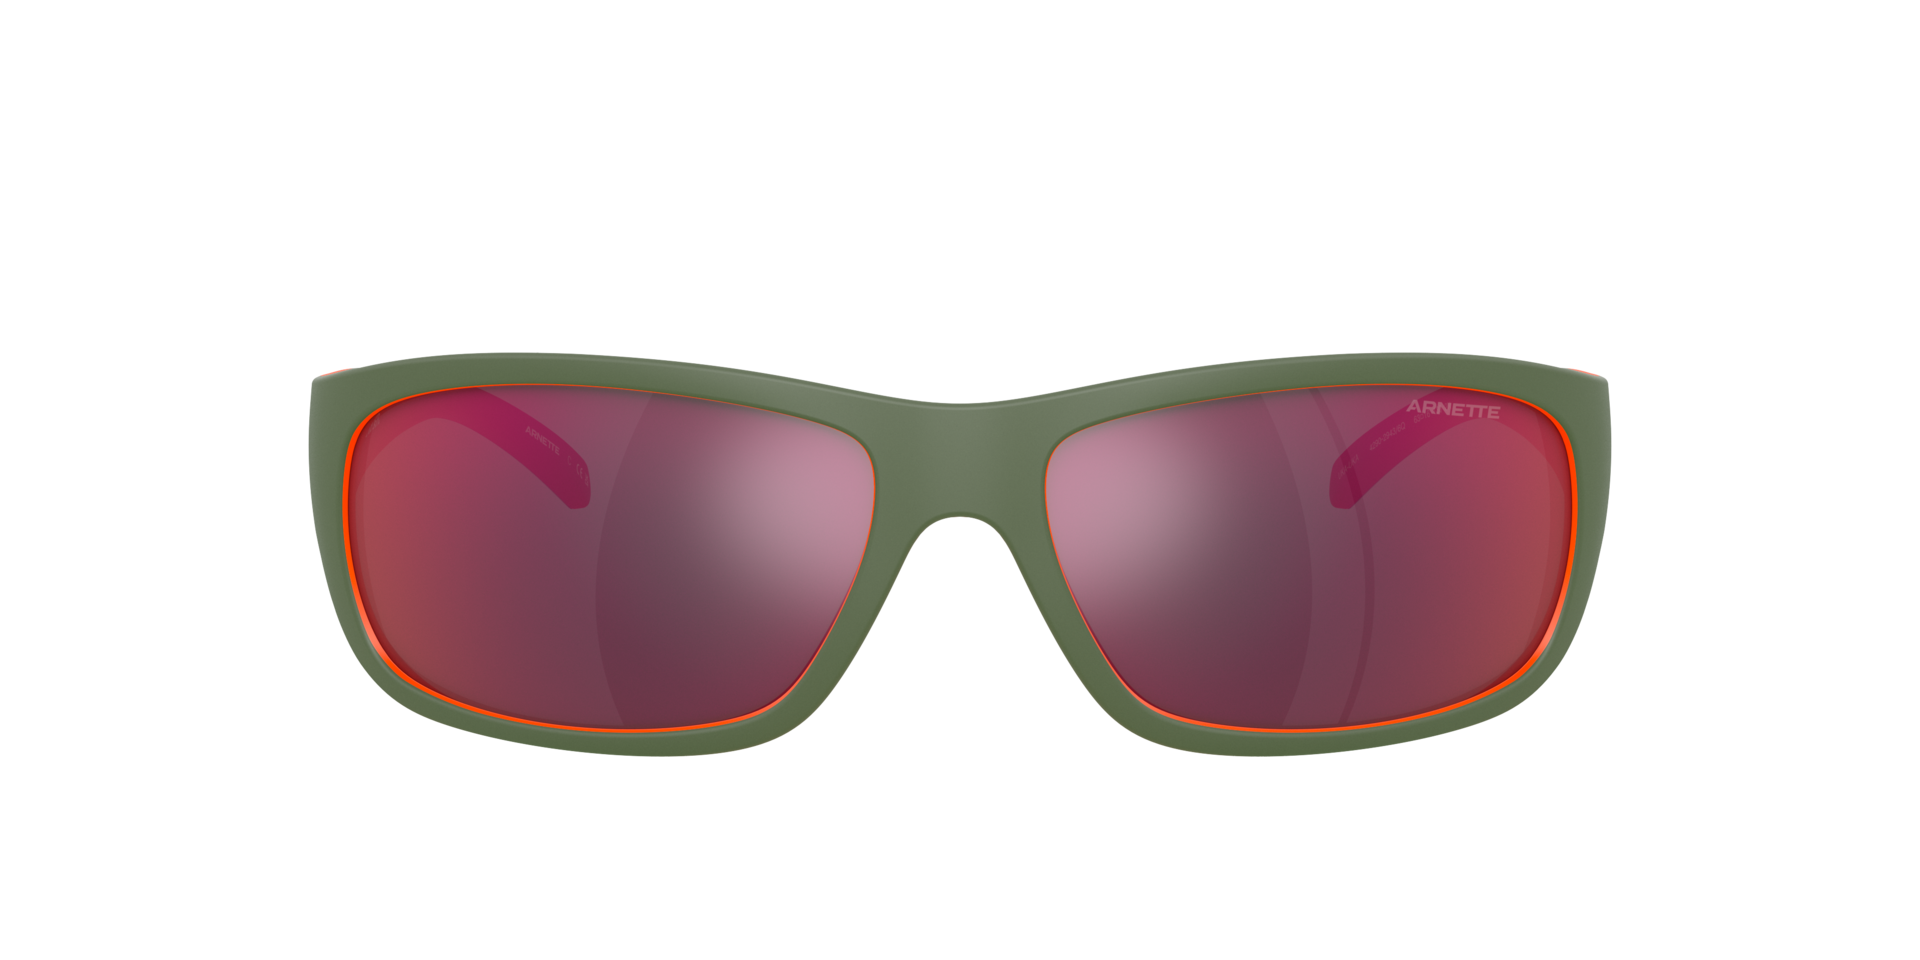 Das Bild zeigt die Sonnenbrille AN4290 29436Q von der Marke Arnette in Grün.